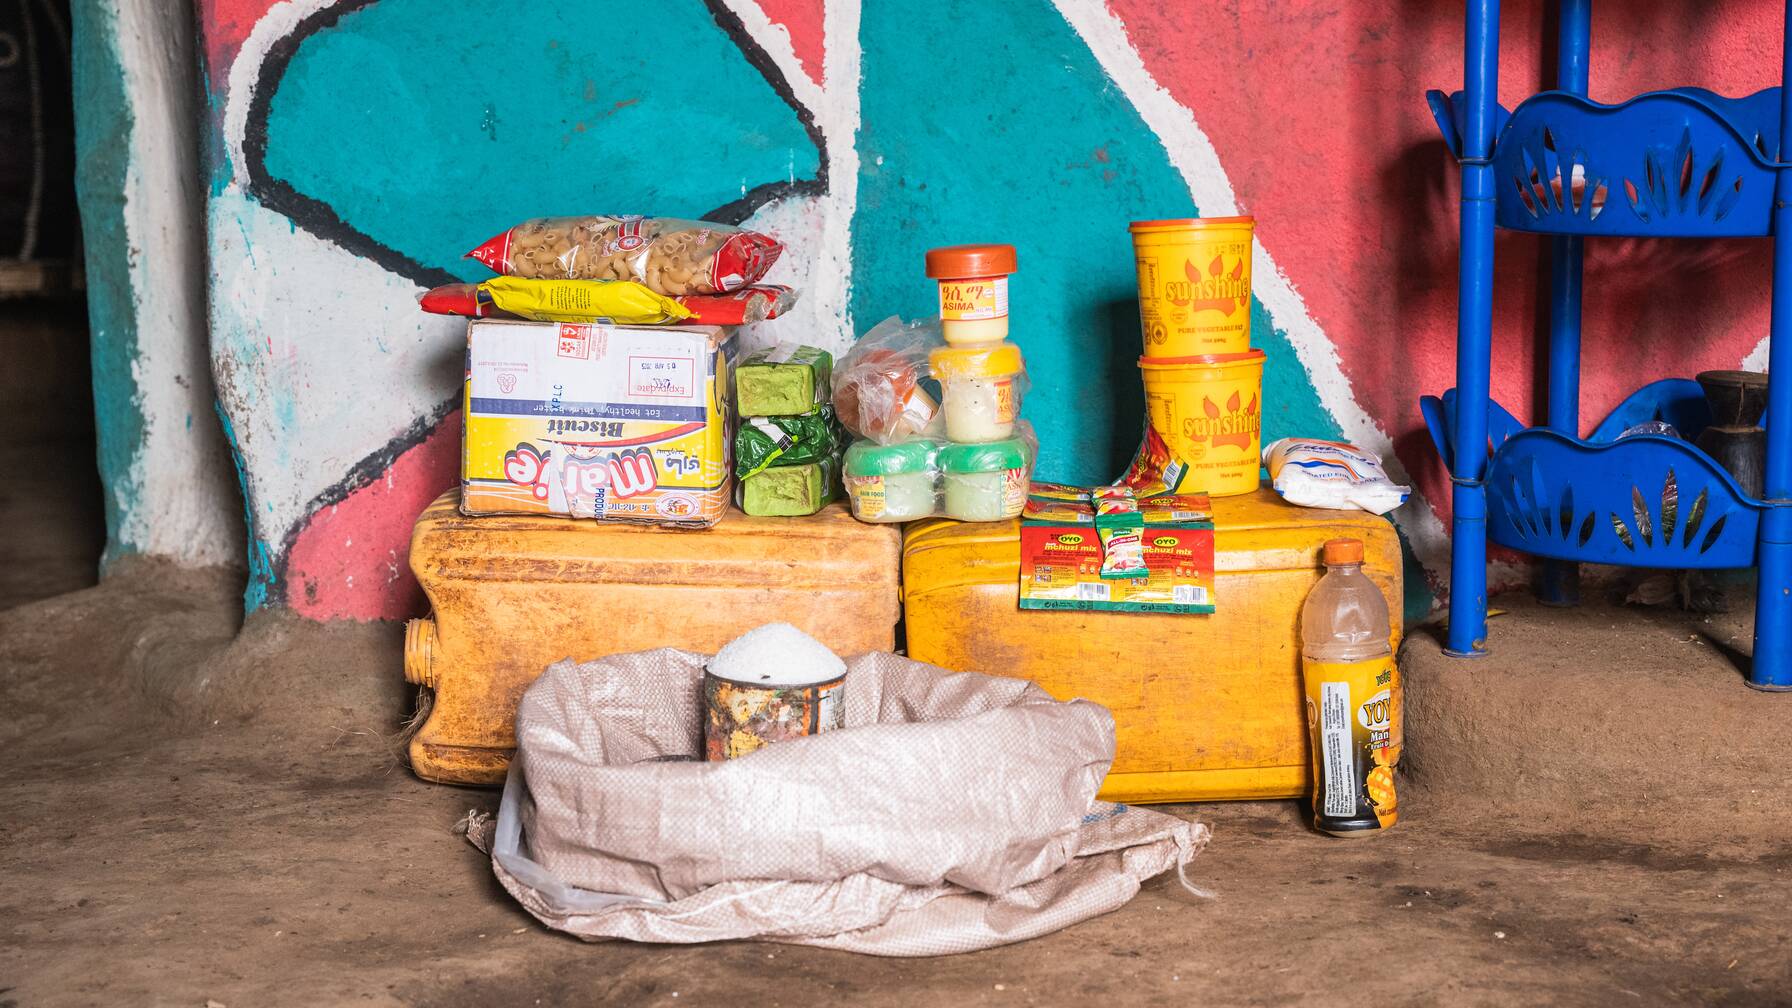 In ihrem Kiosk verkaufen sie Zucker, Suppe, Nudeln und andere Waren. Da ihr Dorf sehr weit von Läden und der Hauptstrasse entfernt liegt, ist es für die Dorfbewohner sonst schwierig, solche Produkte zu kaufen. Der kleine Kiosk wird daher von der Gemeinde sehr geschätzt.
